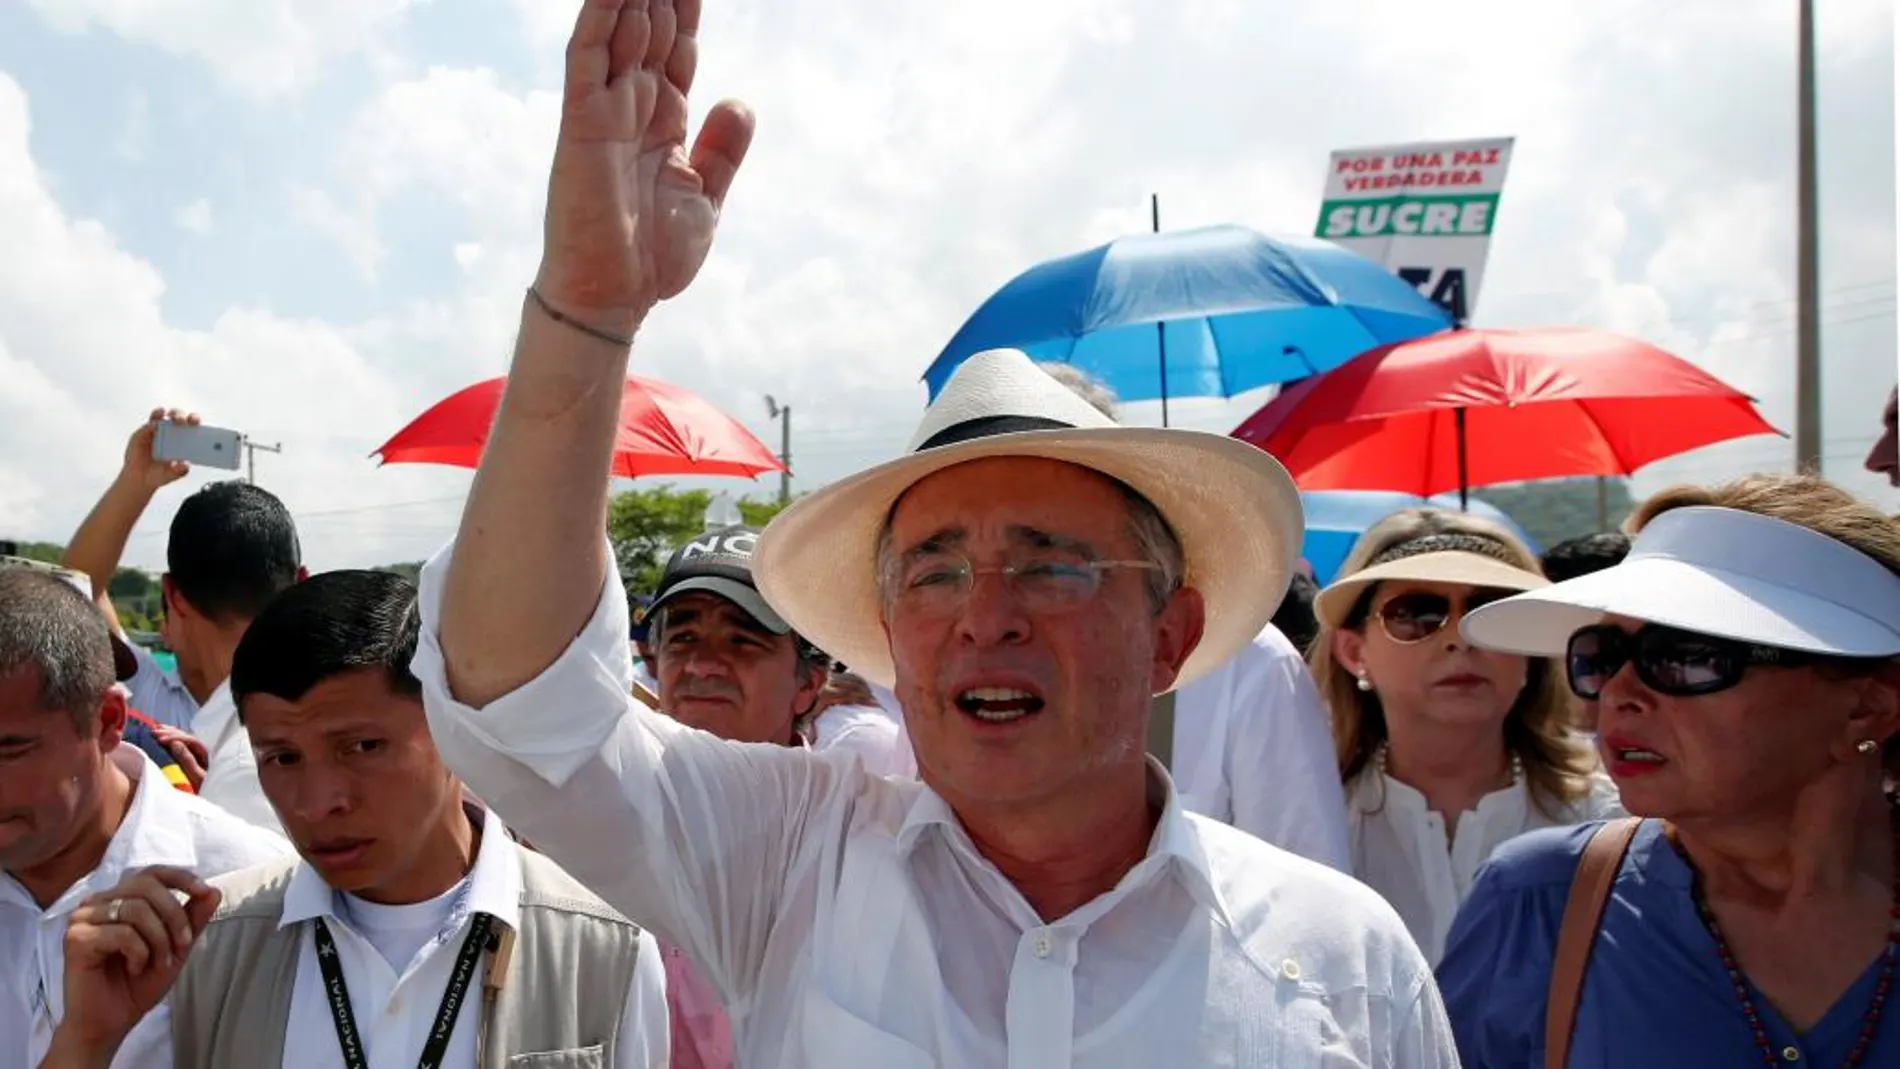 El senador y expresidente colombiano Álvaro Uribe Vélez (i) participa el lunes 26 de septiembre de 2016, en una concentración en contra del plebiscito y de la firma del acuerdo de paz en Cartagena